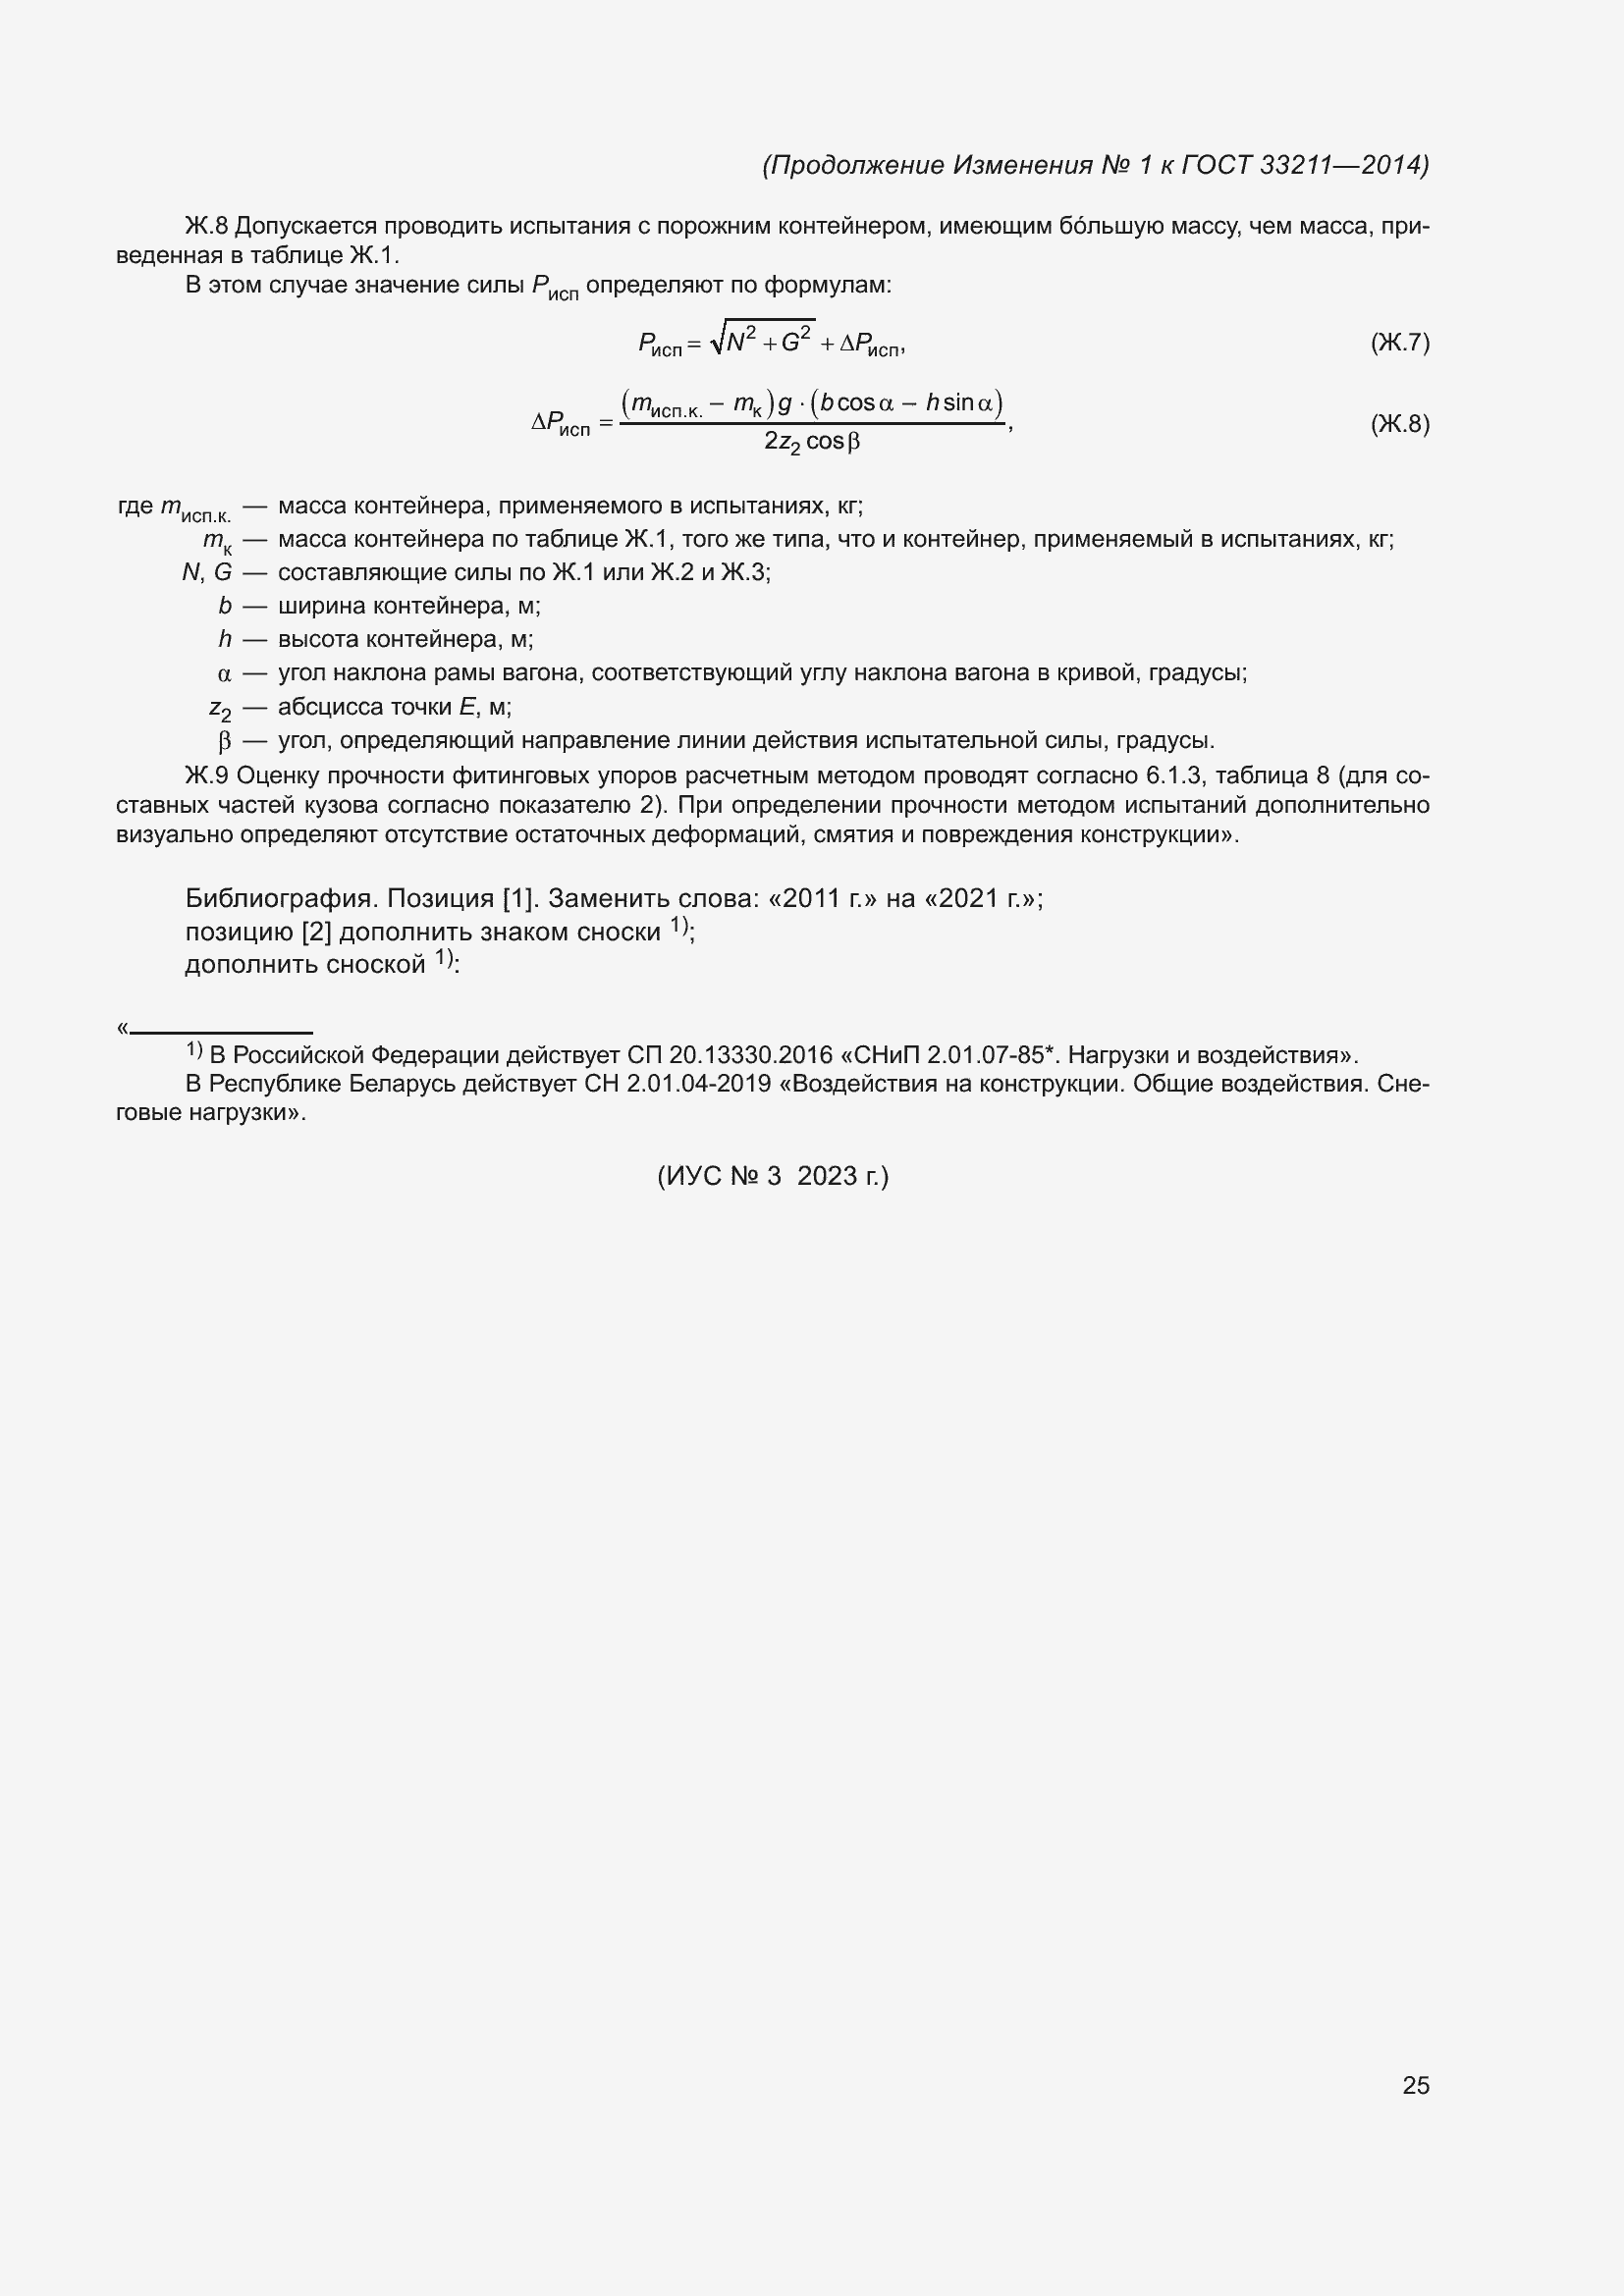 Изменение №1 к ГОСТ 33211-2014